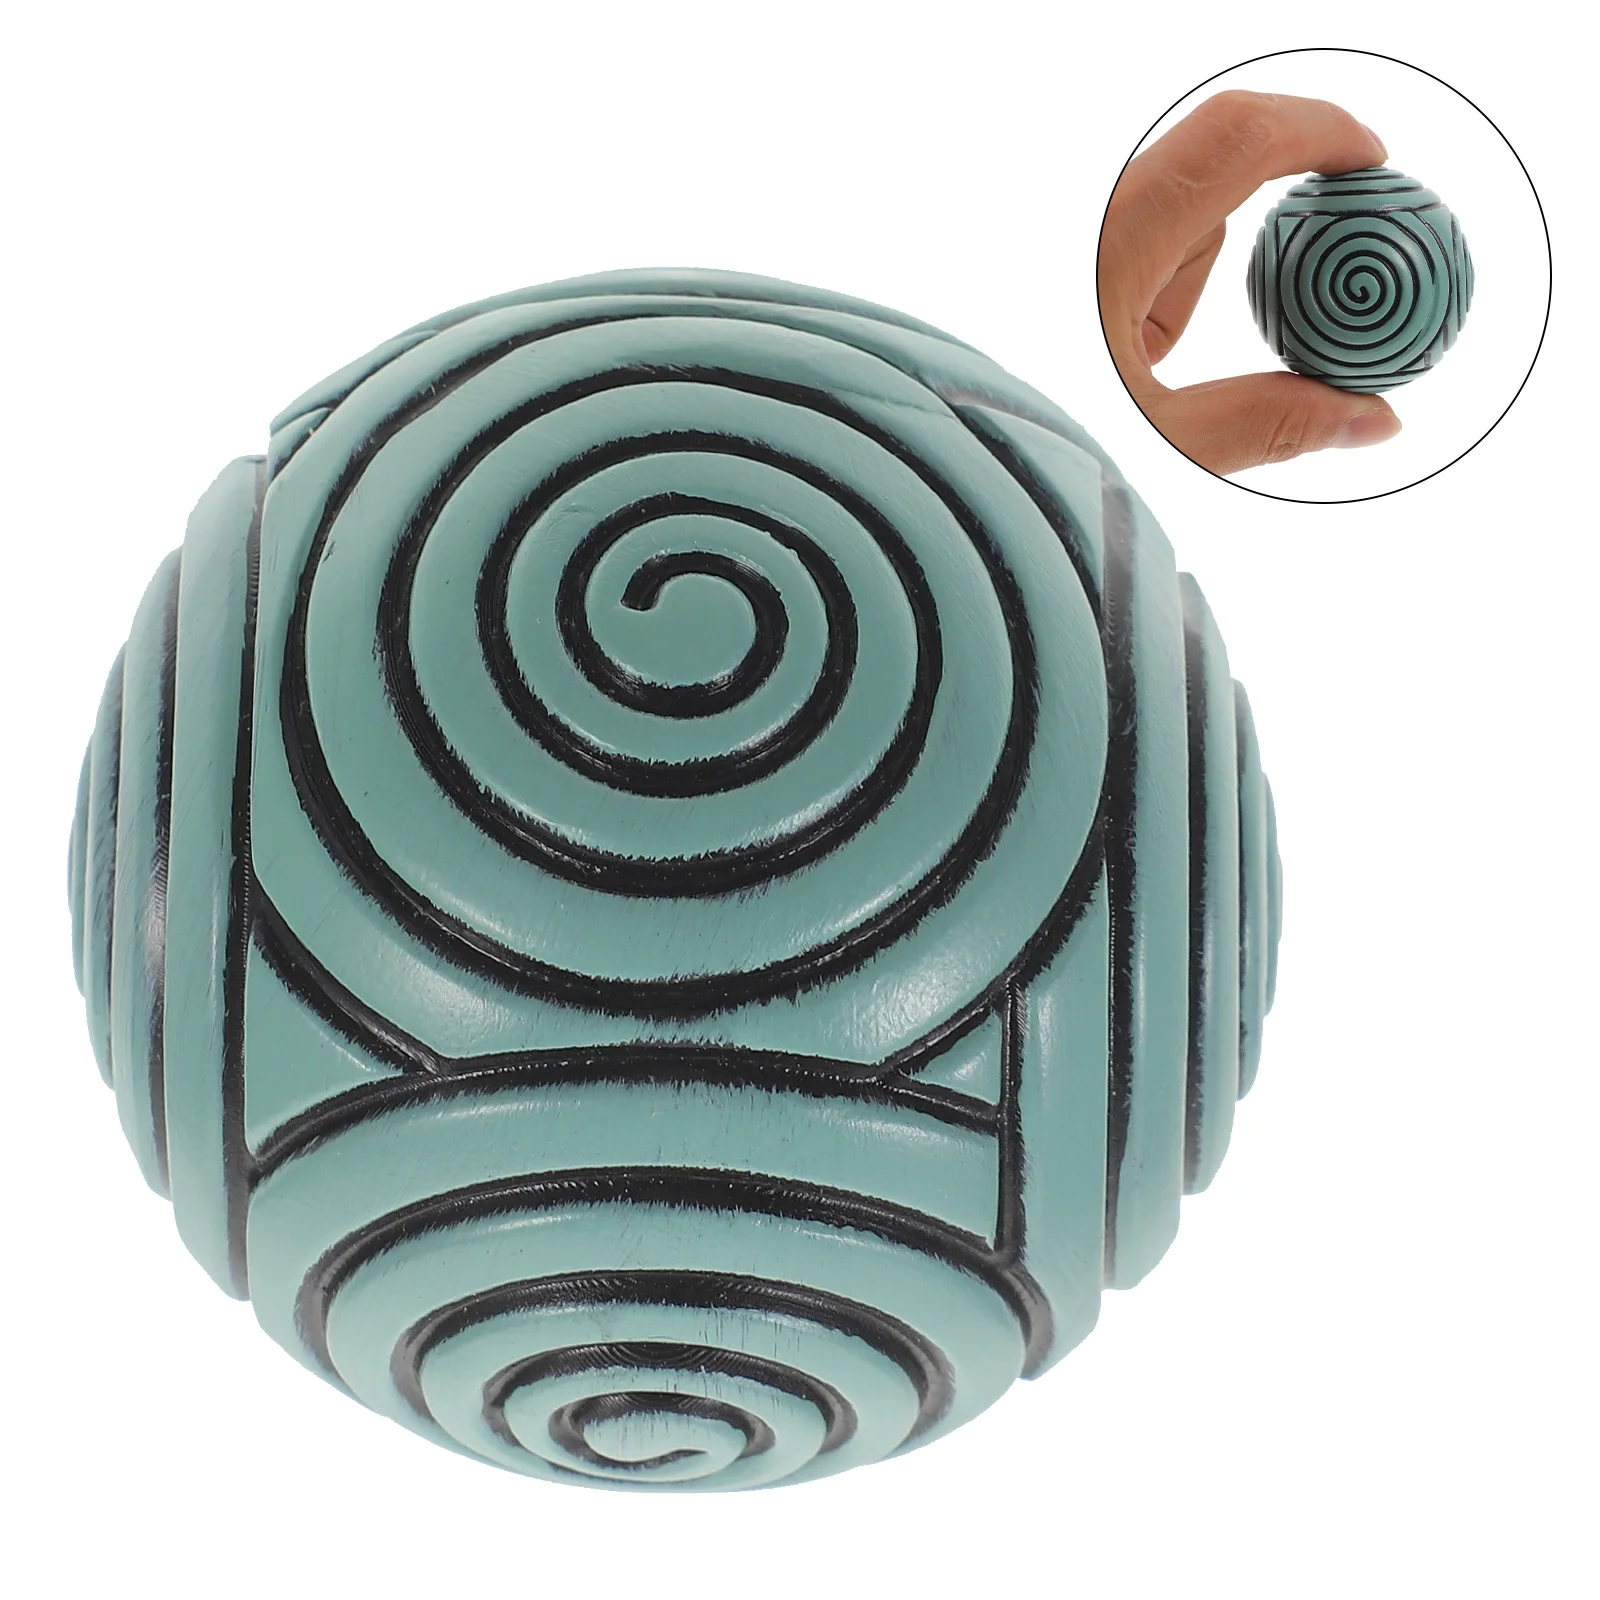 

Zen Garden Accessories Sand Table Ball Stamp Sphere Supplies Resin Crafts Sandbox Yoga